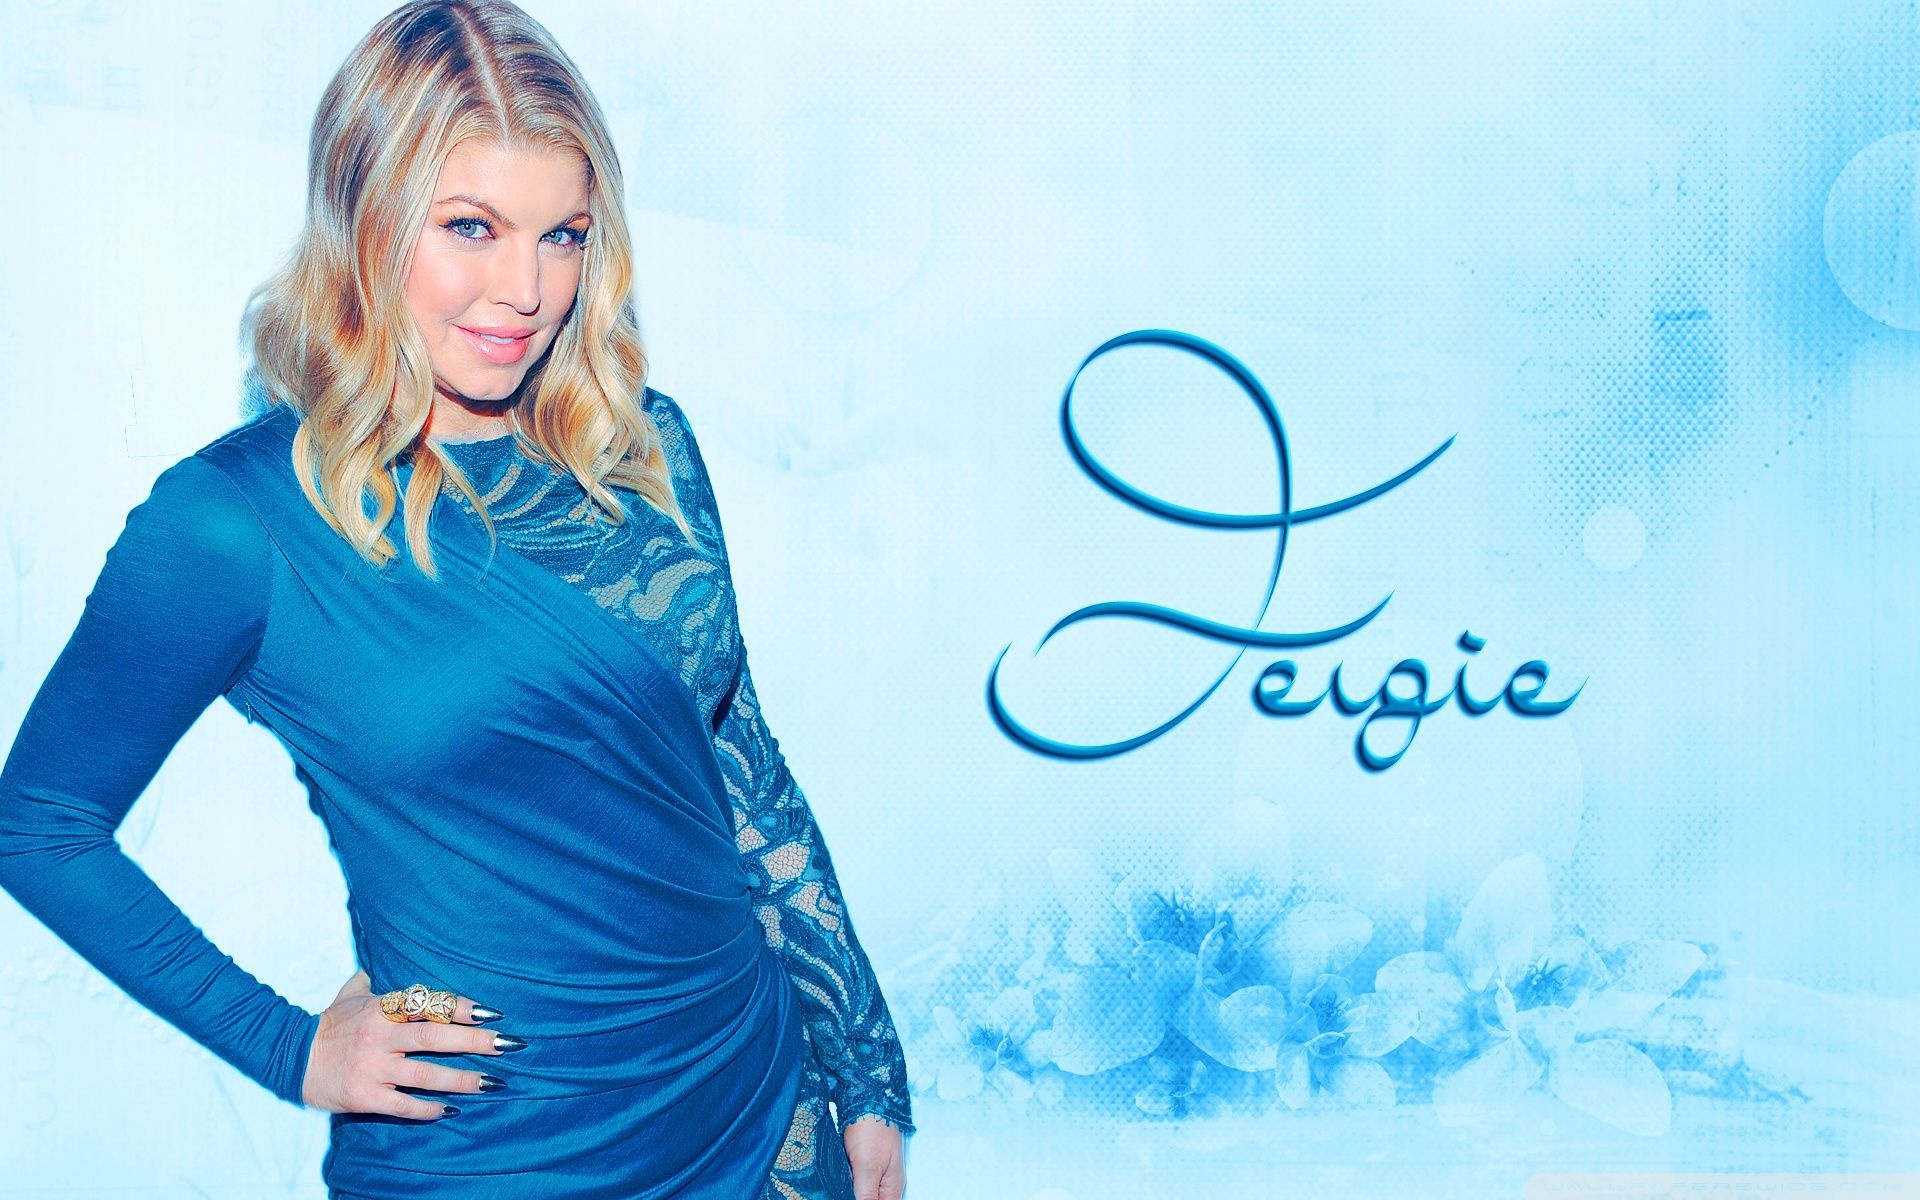 Fergie: "L.A. Love (La La)" was released as the lead single on September 29, 2014. 1920x1200 HD Wallpaper.